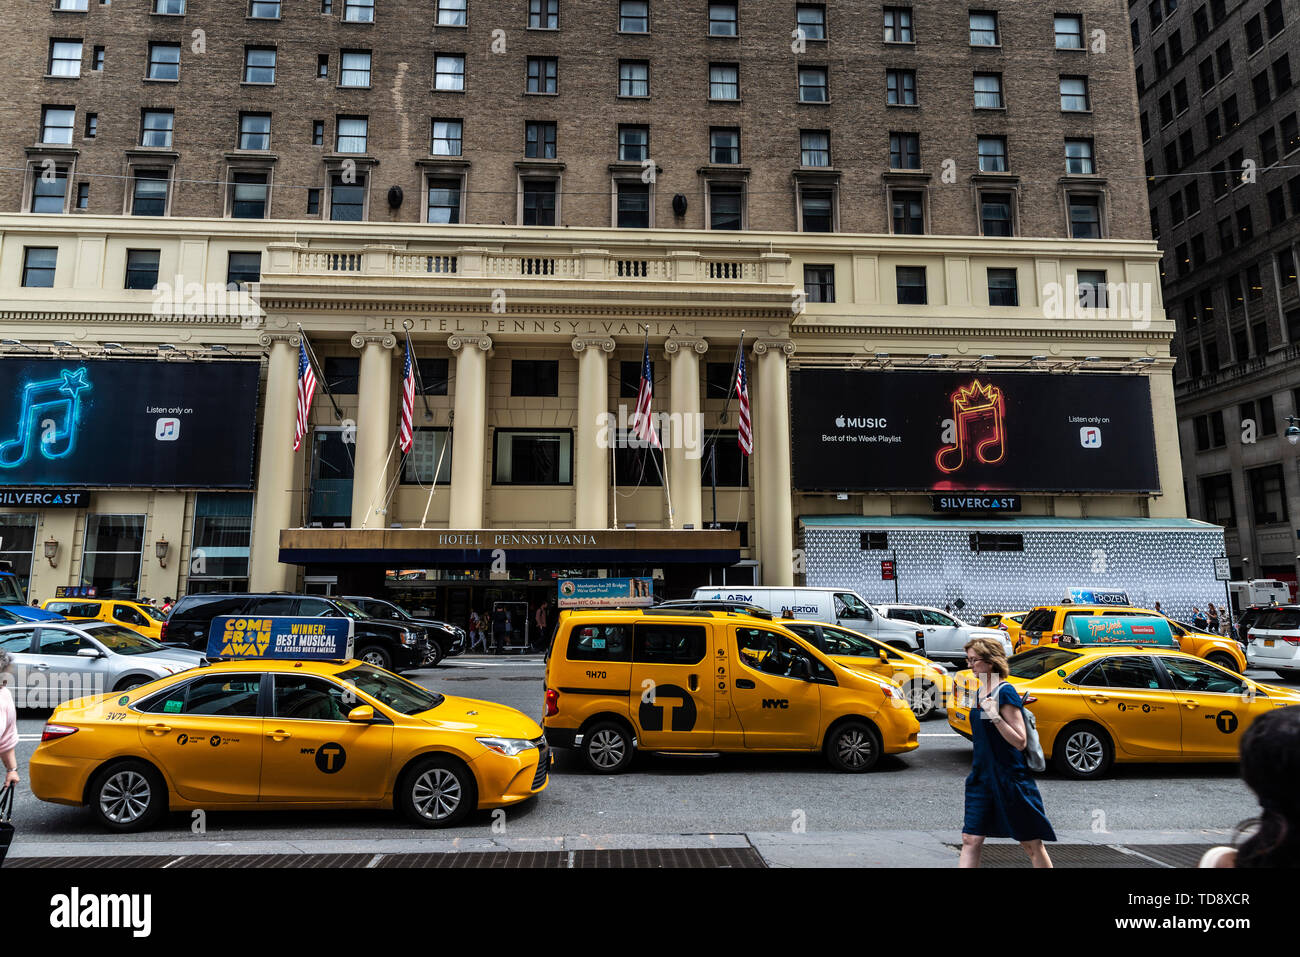 La Ciudad de Nueva York, Estados Unidos - 31 de julio de 2018: Fachada del Hotel Pennsylvania, frente al Madison Square Garden y Penn Station con el tráfico y la gente un Foto de stock